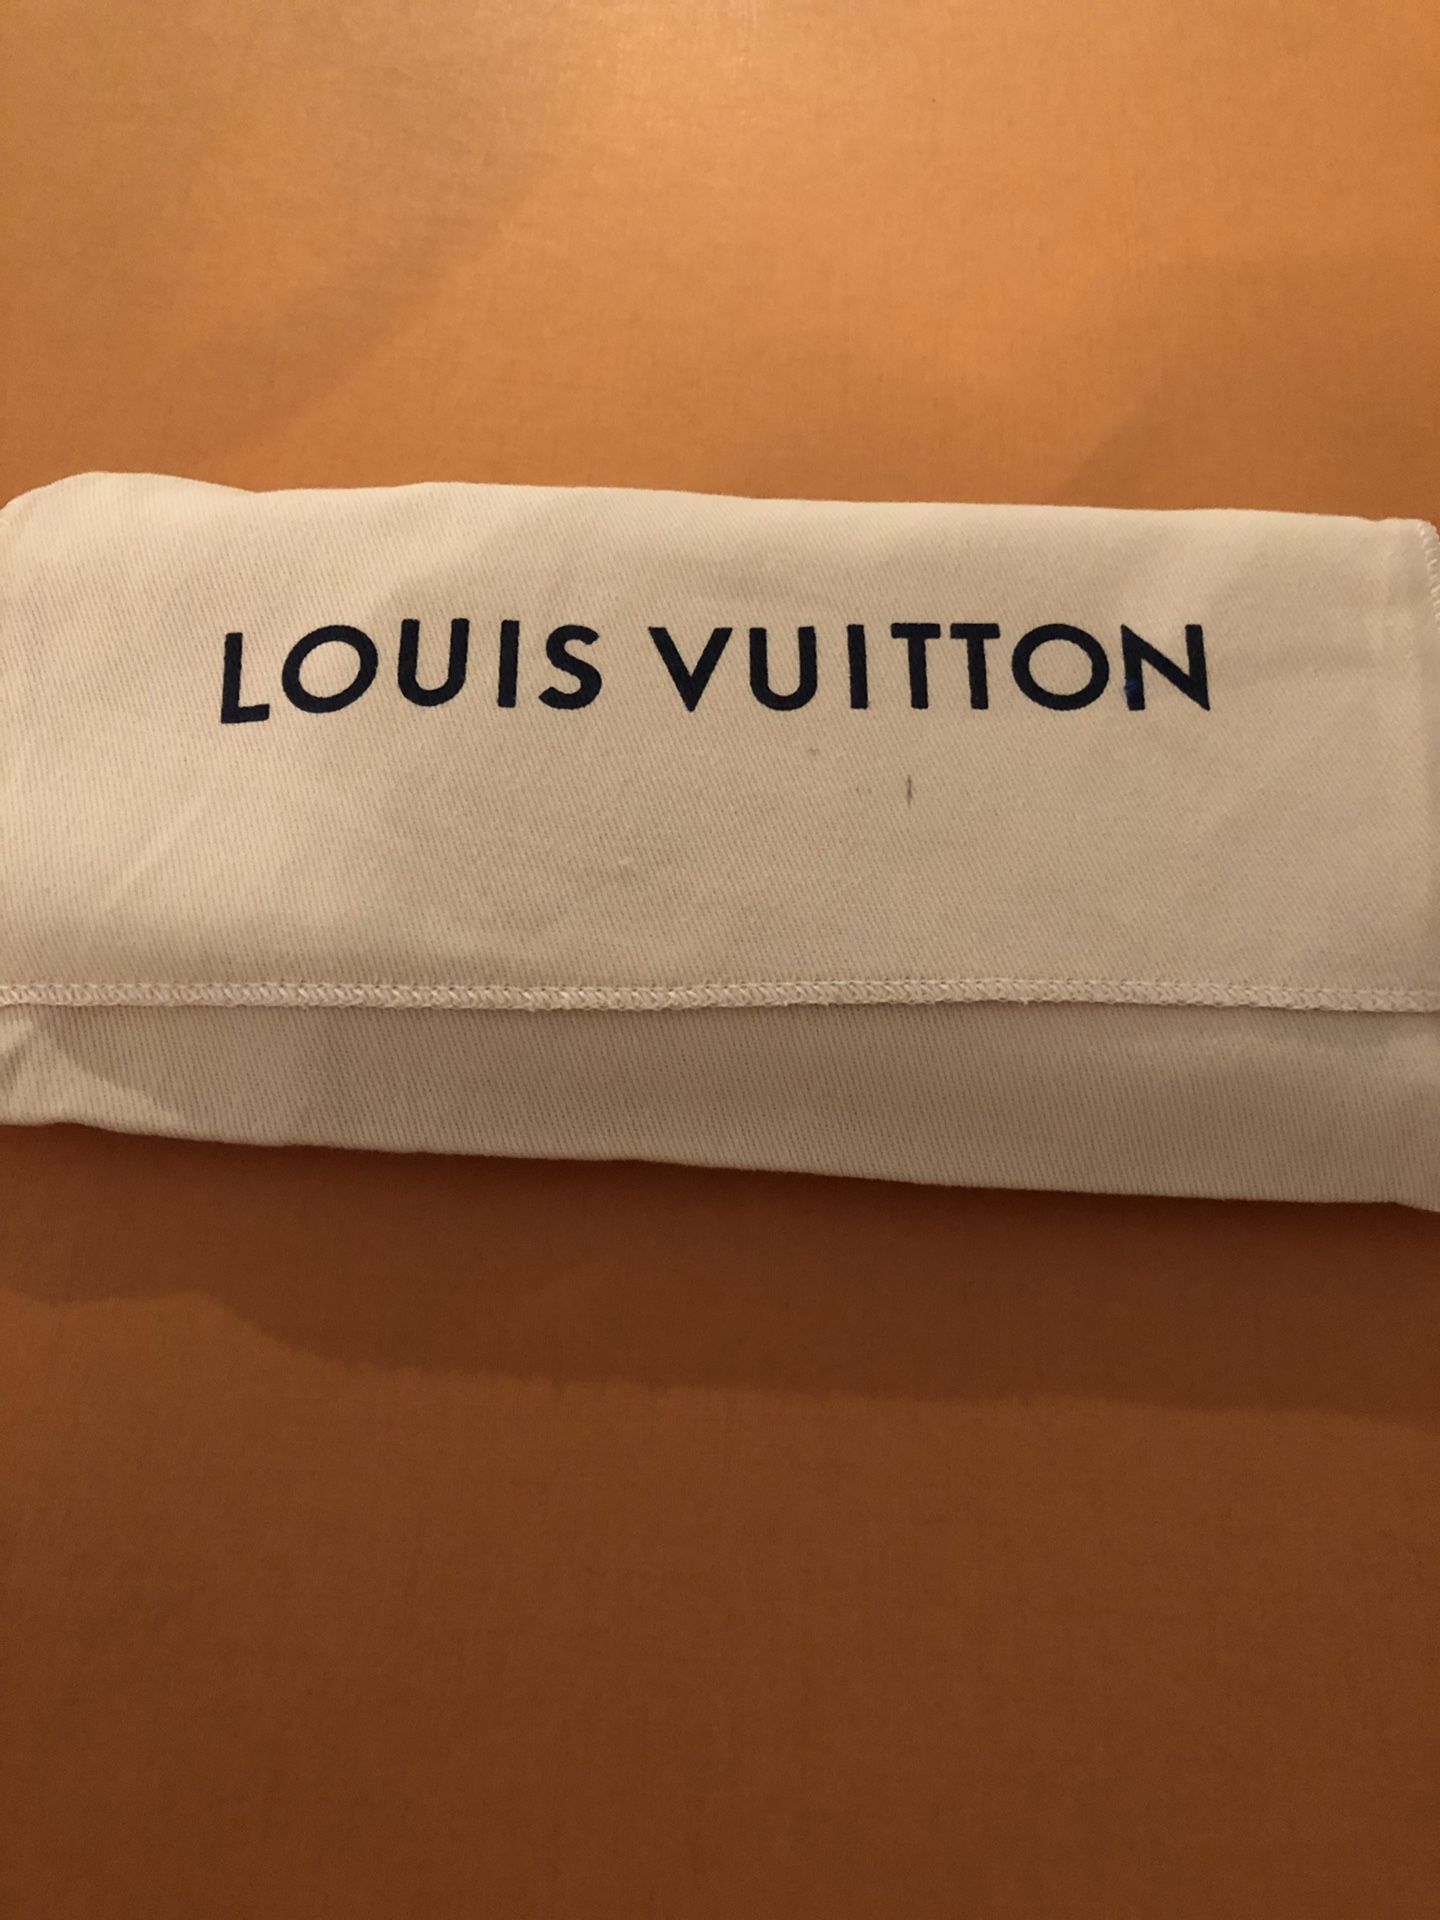 Louis Vuitton Agenda 2019